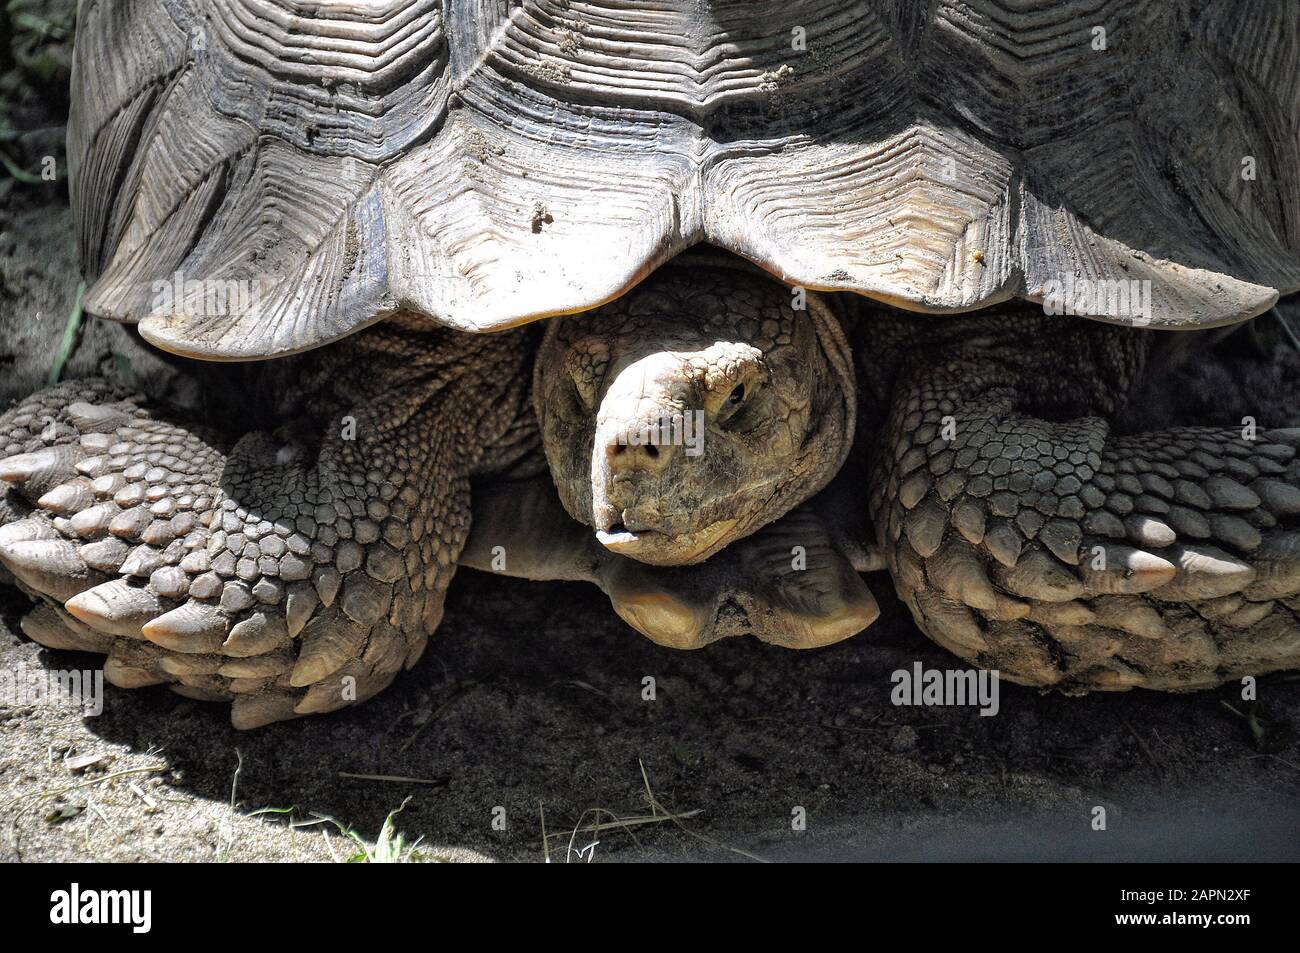 Grande Turtle primo piano sulla terra, protezione degli animali Foto Stock